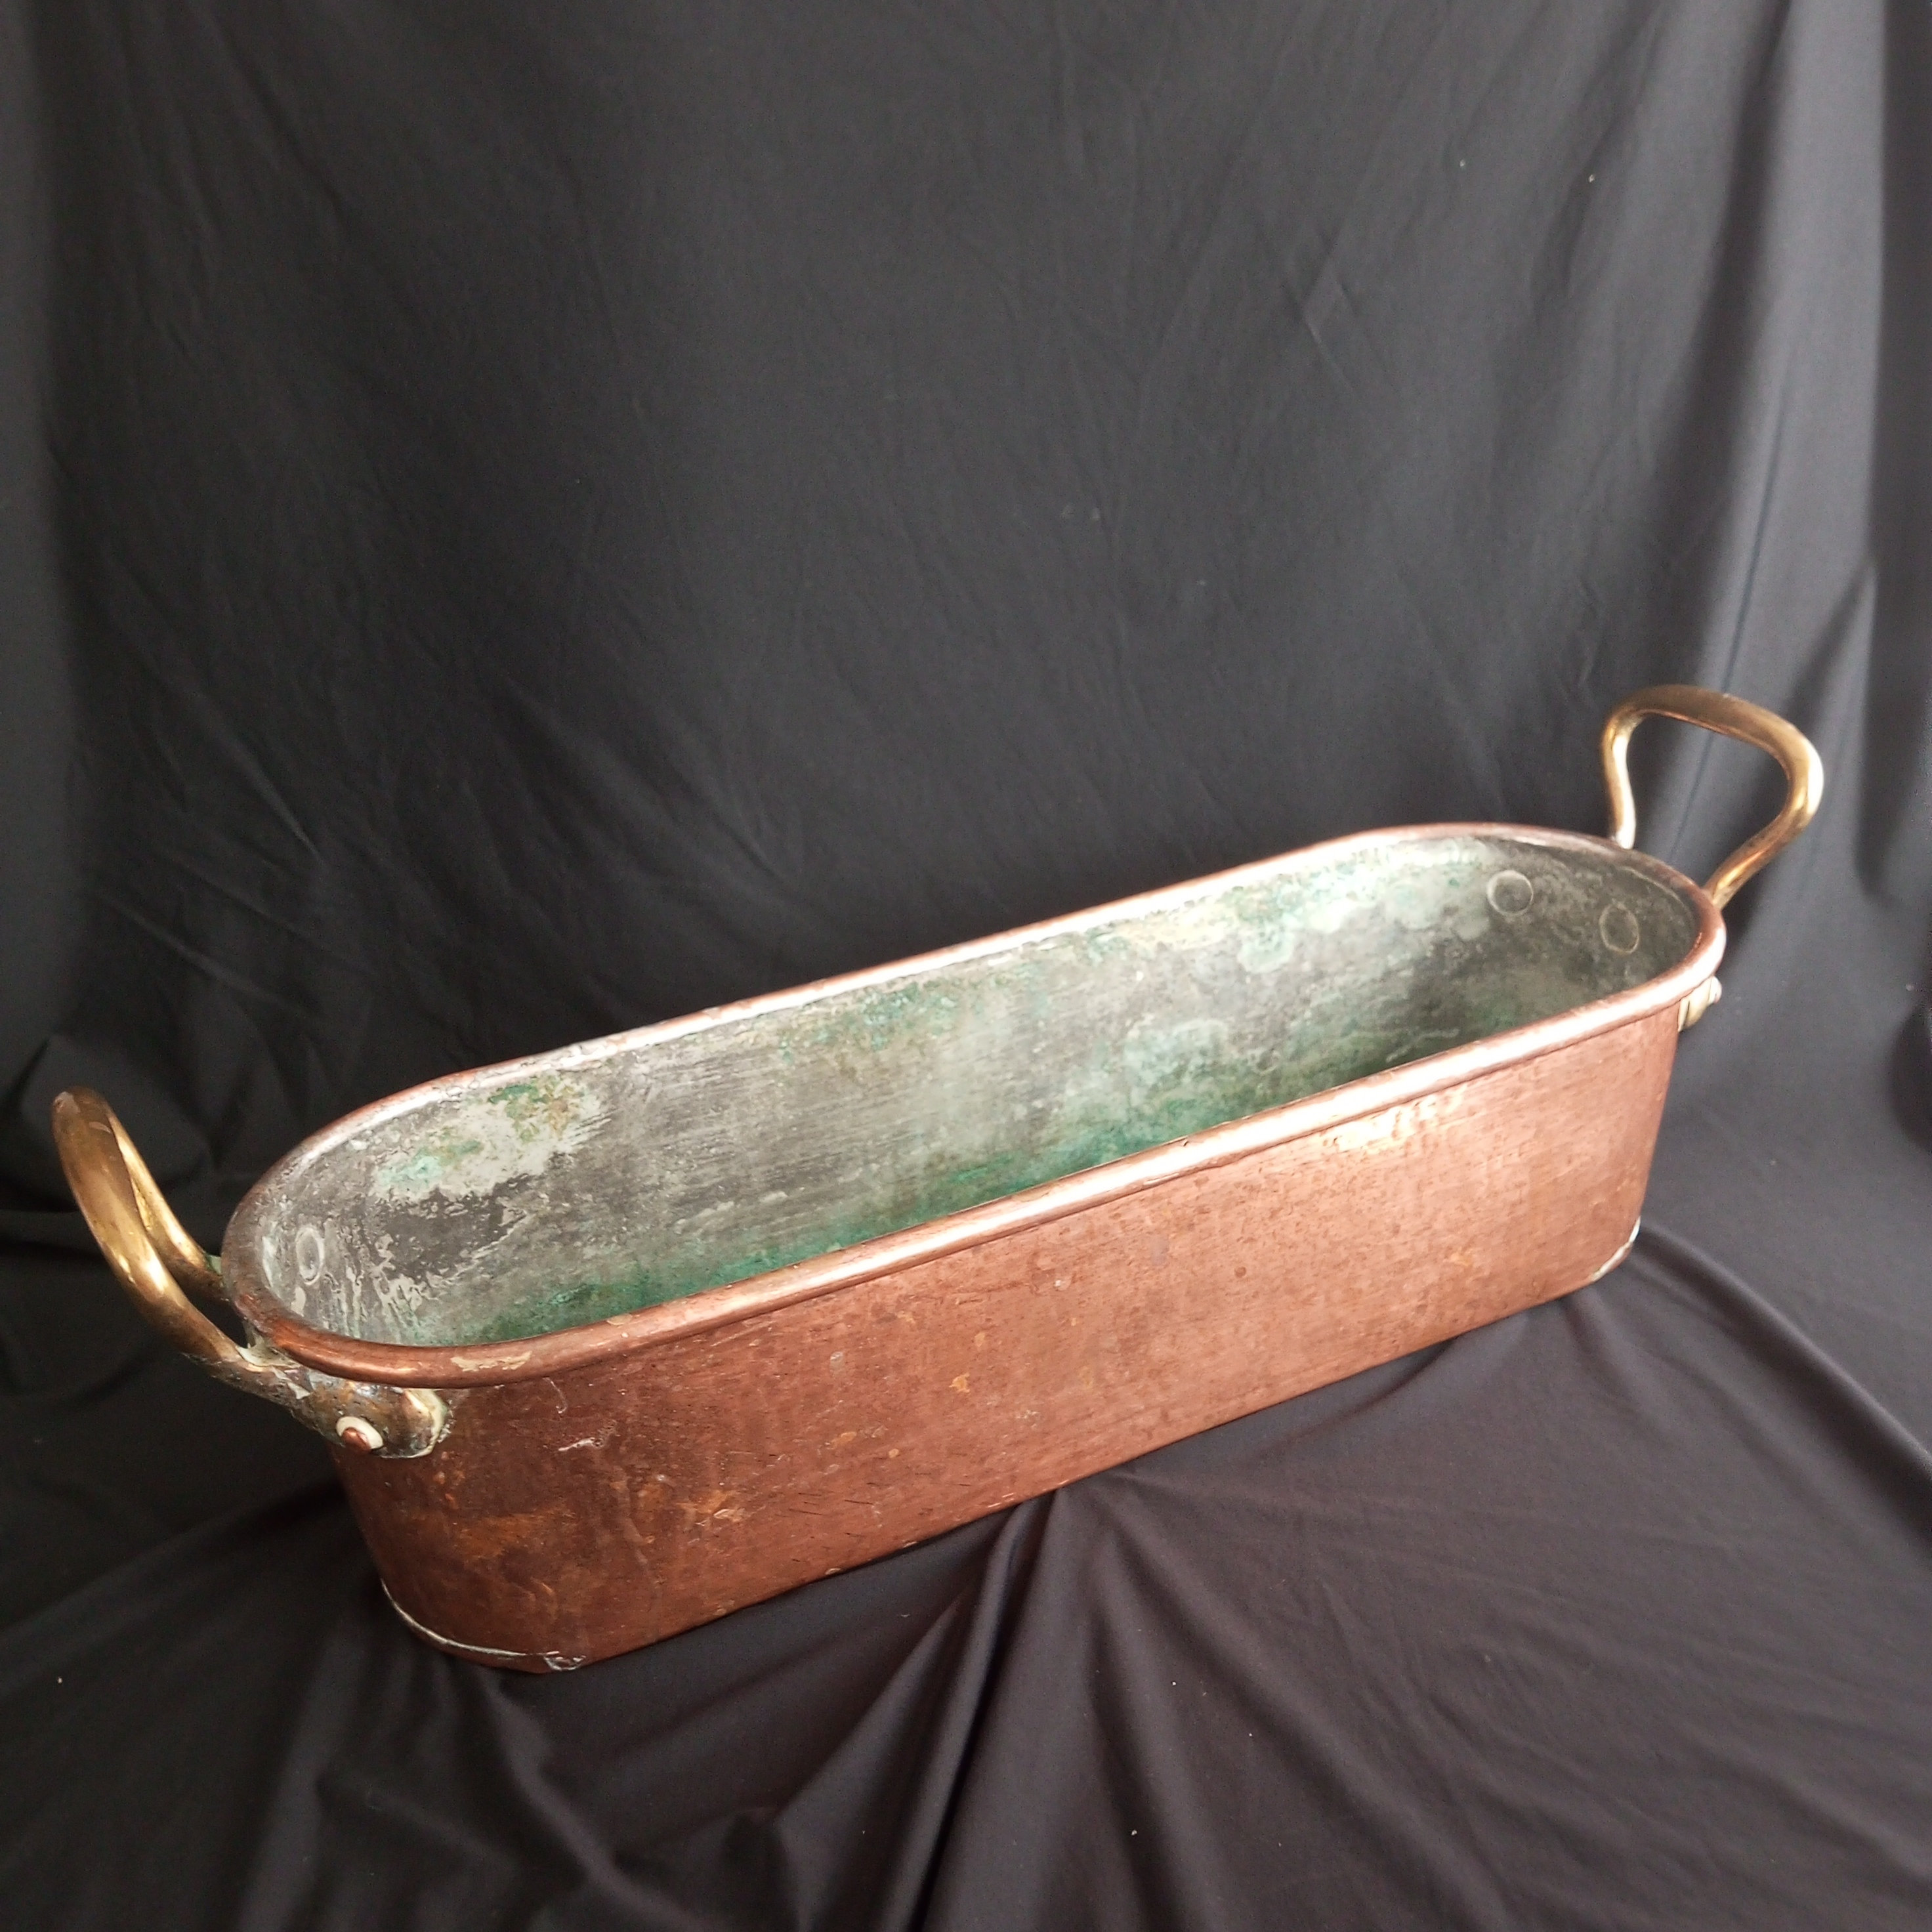 Een Hoorn - Beautiful red copper oven oval pans - Copper